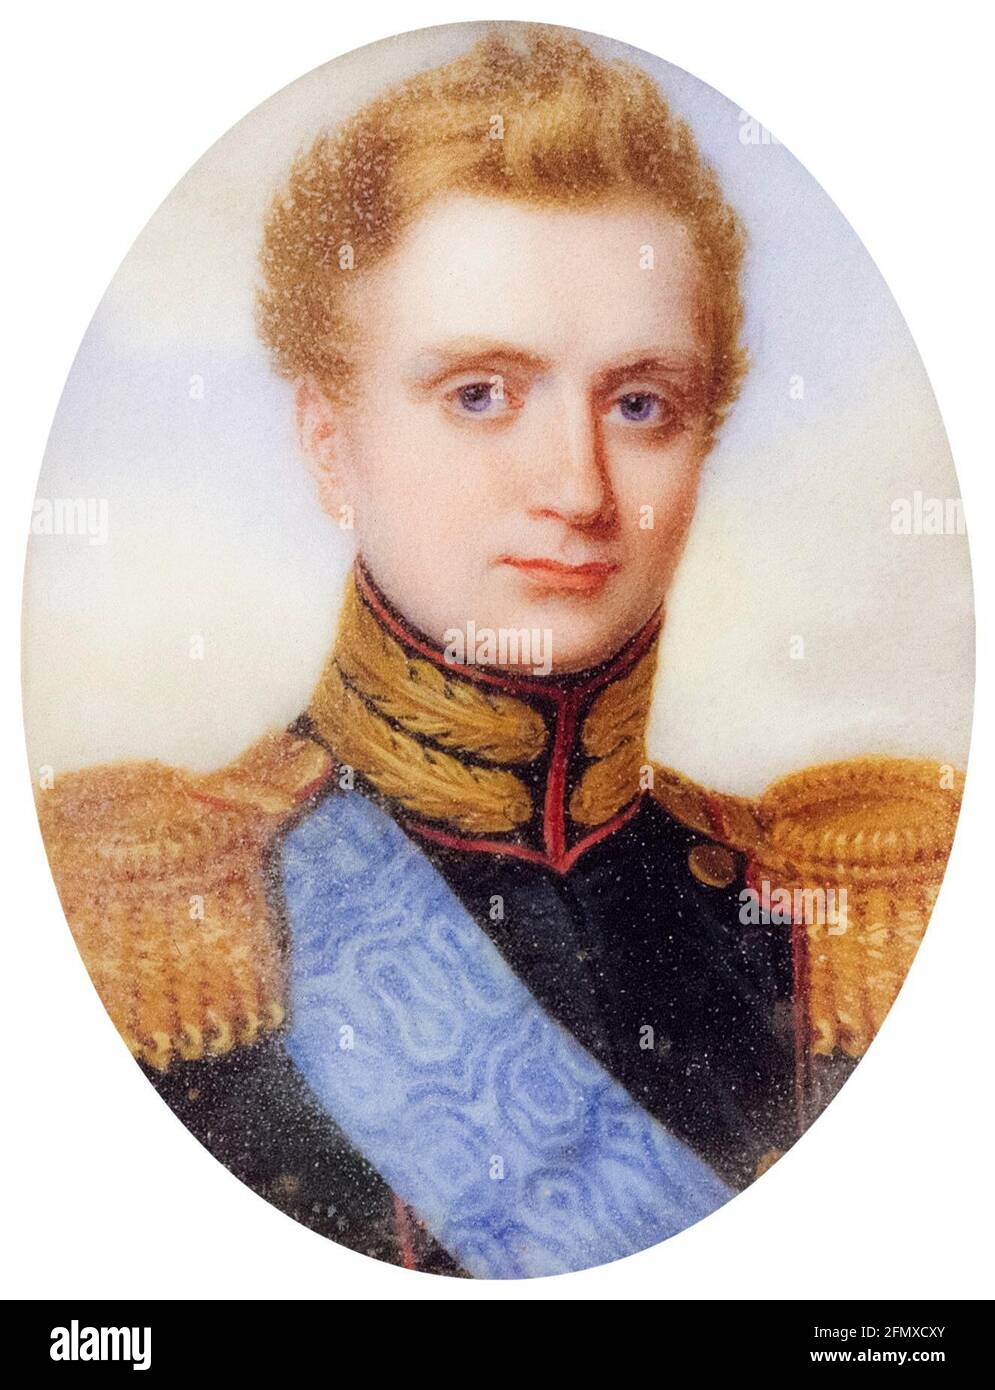 Großherzog Michael Pavlovich von Russland (1798-1849), russischer Prinz, Porträtminiatur von Anthelme François Lagrenée, um 1823 Stockfoto